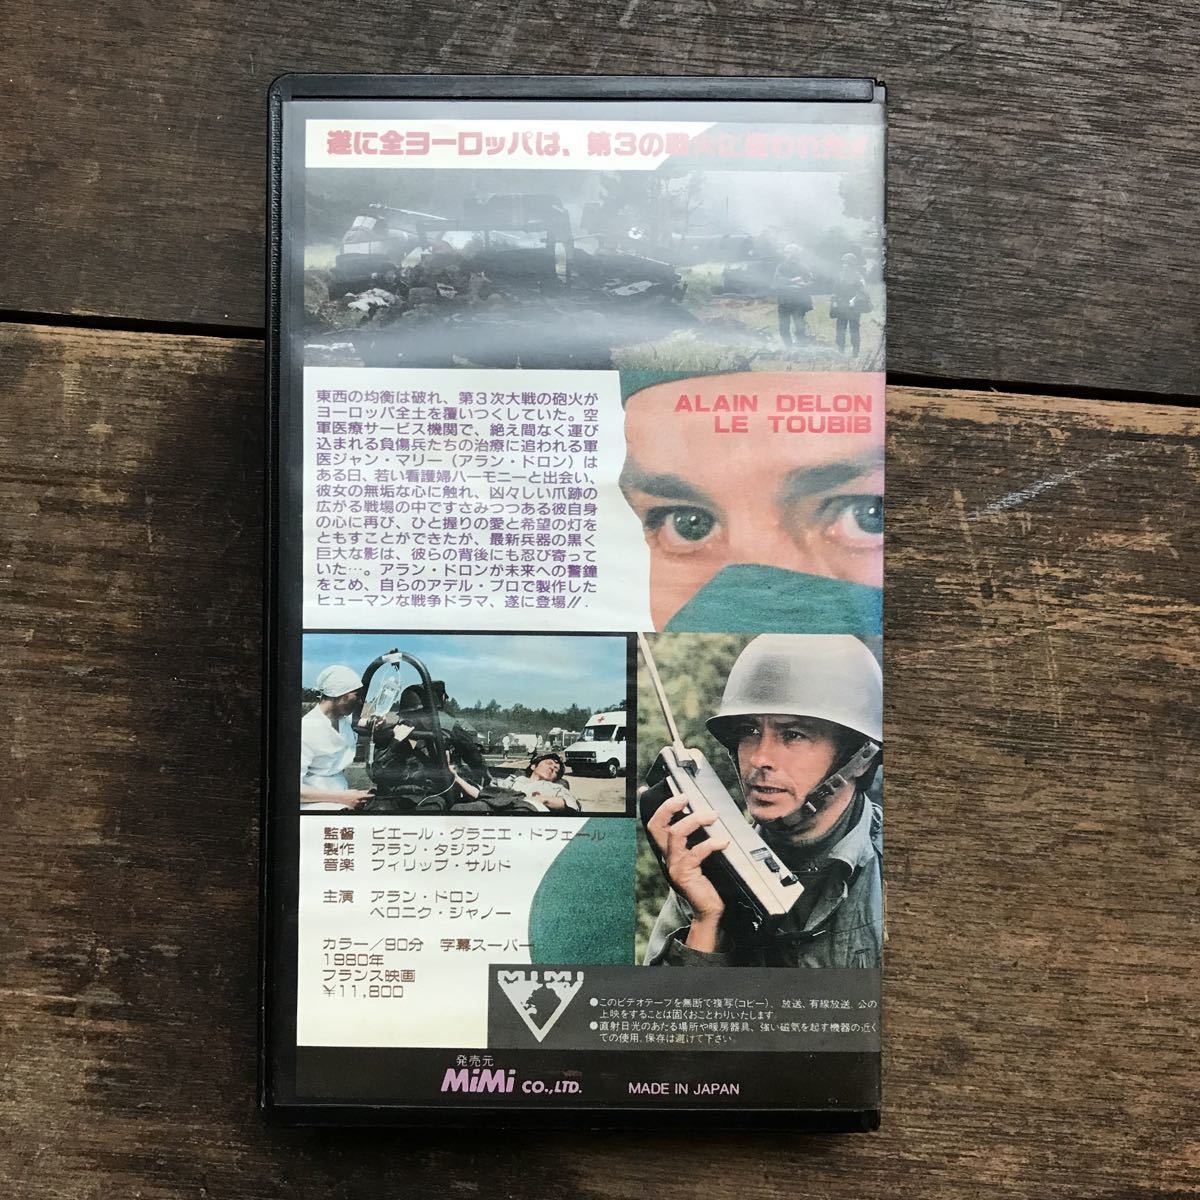 VHS 未知の戦場 ヨーロッパ1980年 フランス映画 監督 ピエール・グラニエ・ドフェール アランドロン ビンテージ 映画 ビデオテープ_画像2